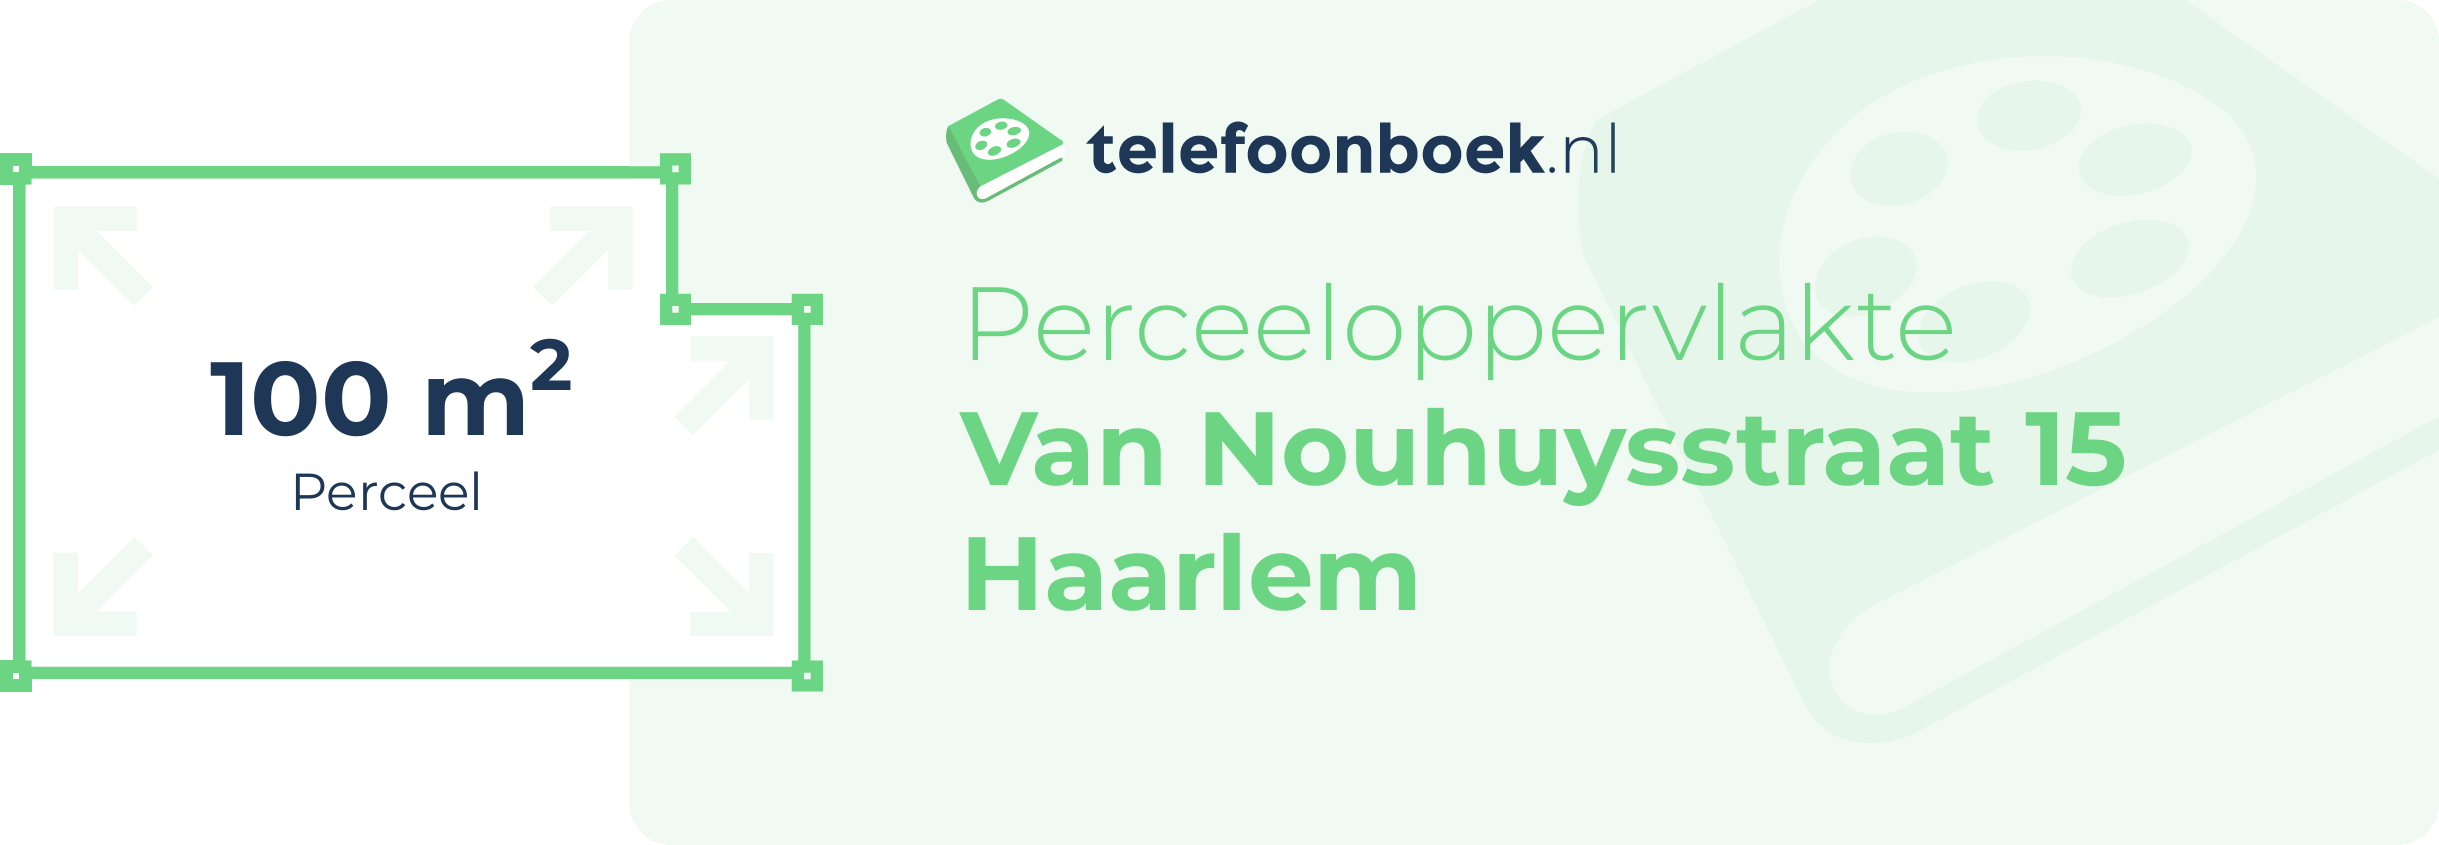 Perceeloppervlakte Van Nouhuysstraat 15 Haarlem